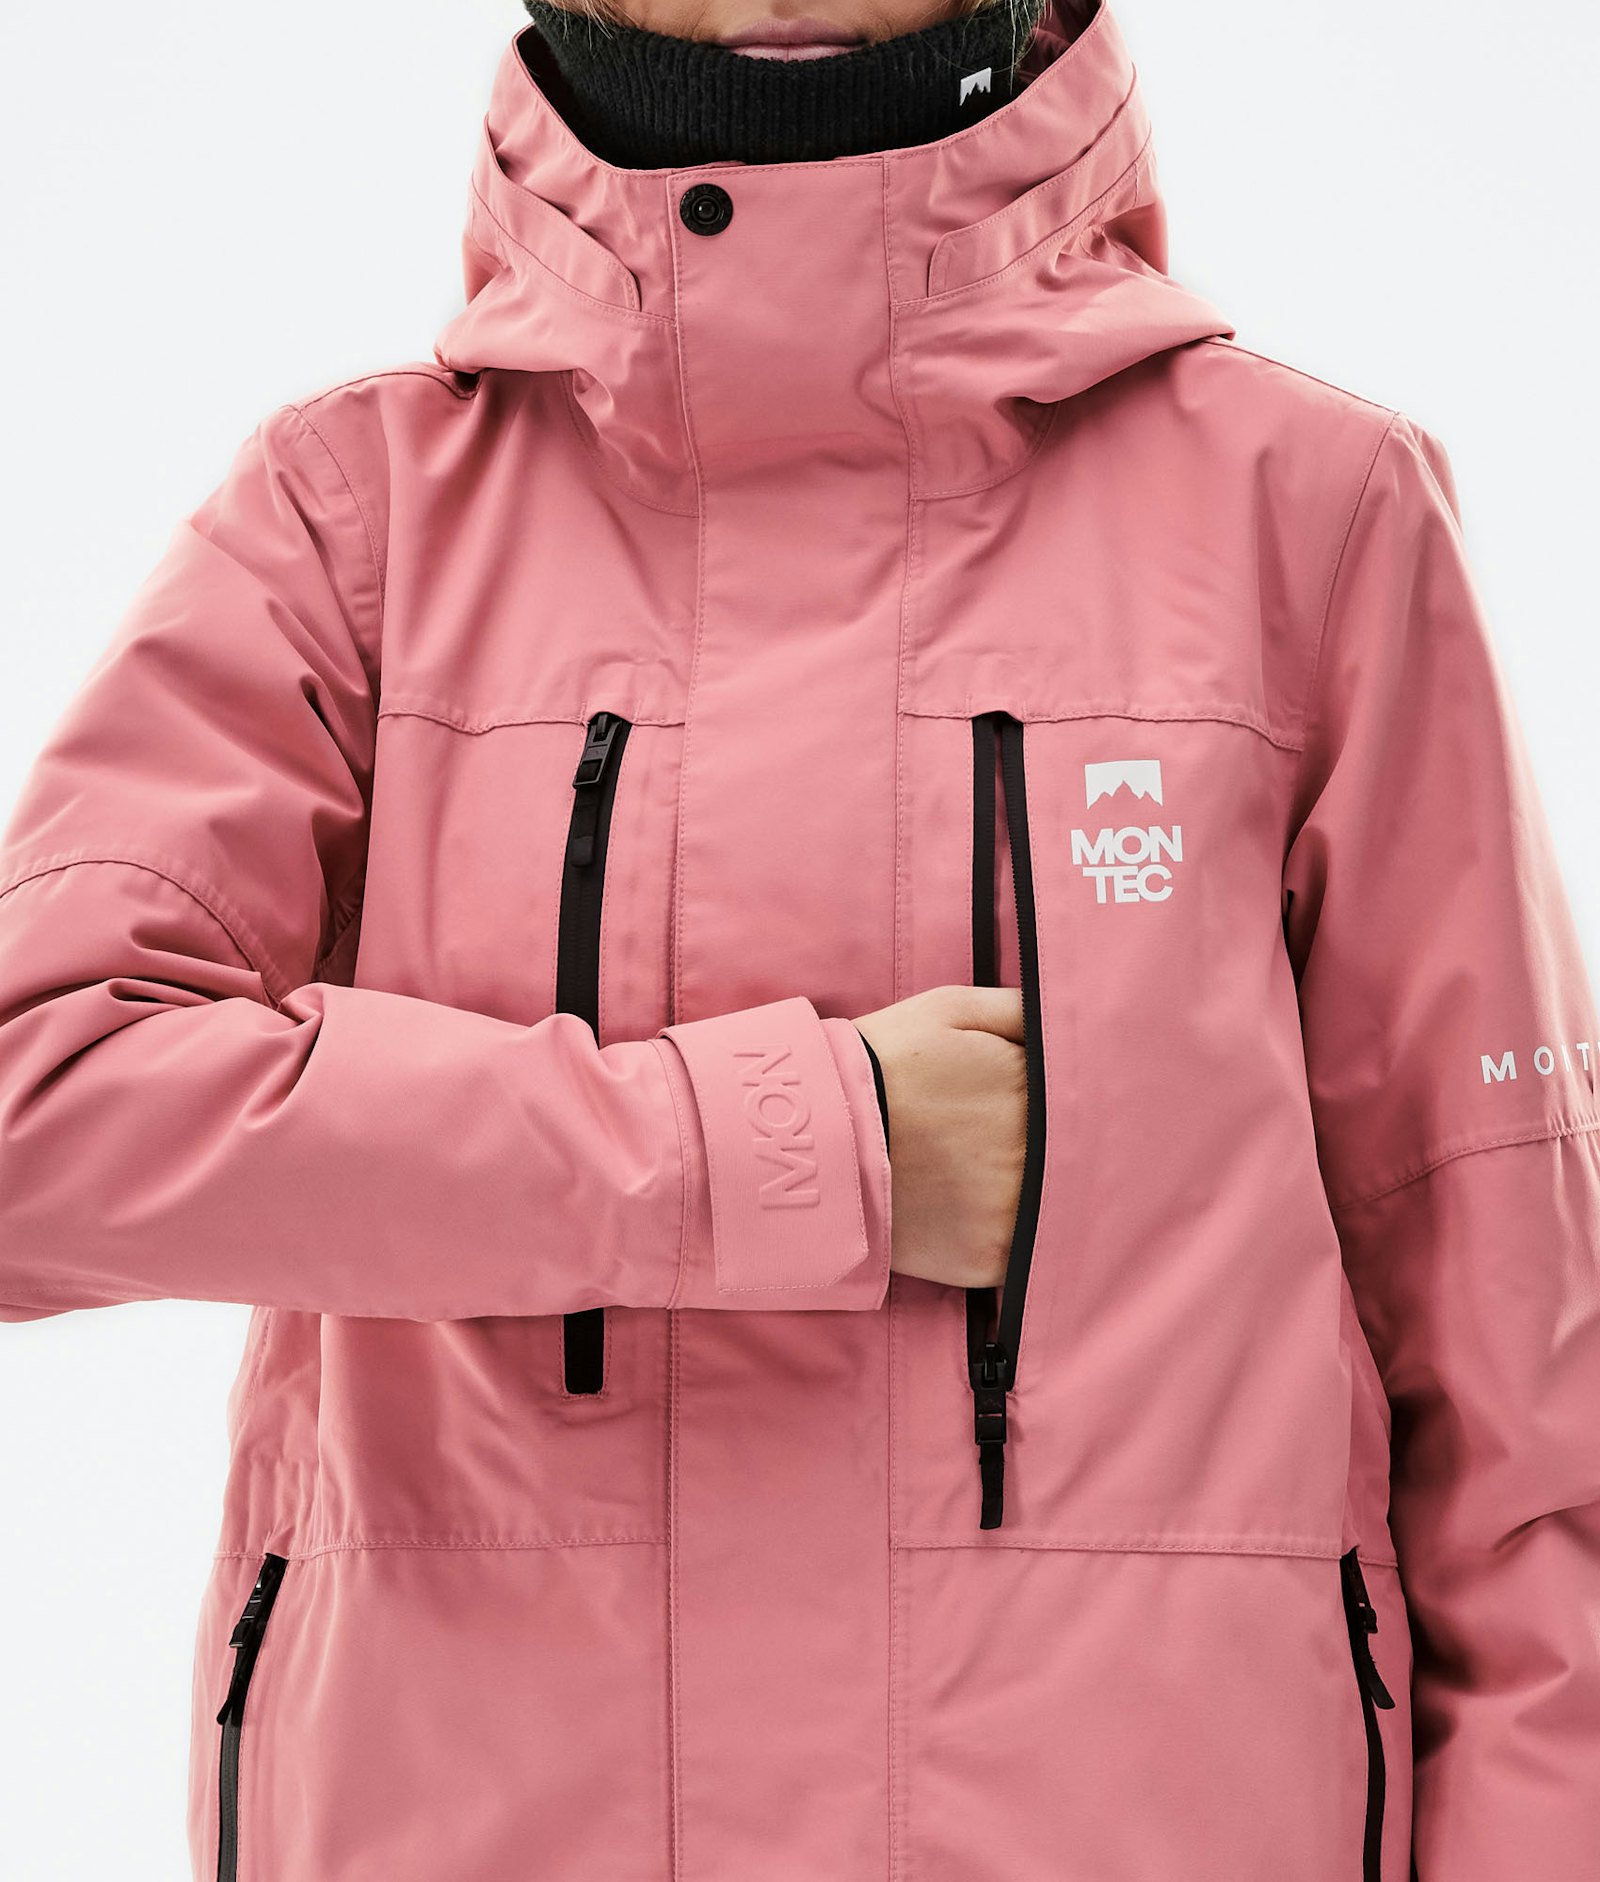 Montec Fawk W 2021 Skijacke Damen Pink